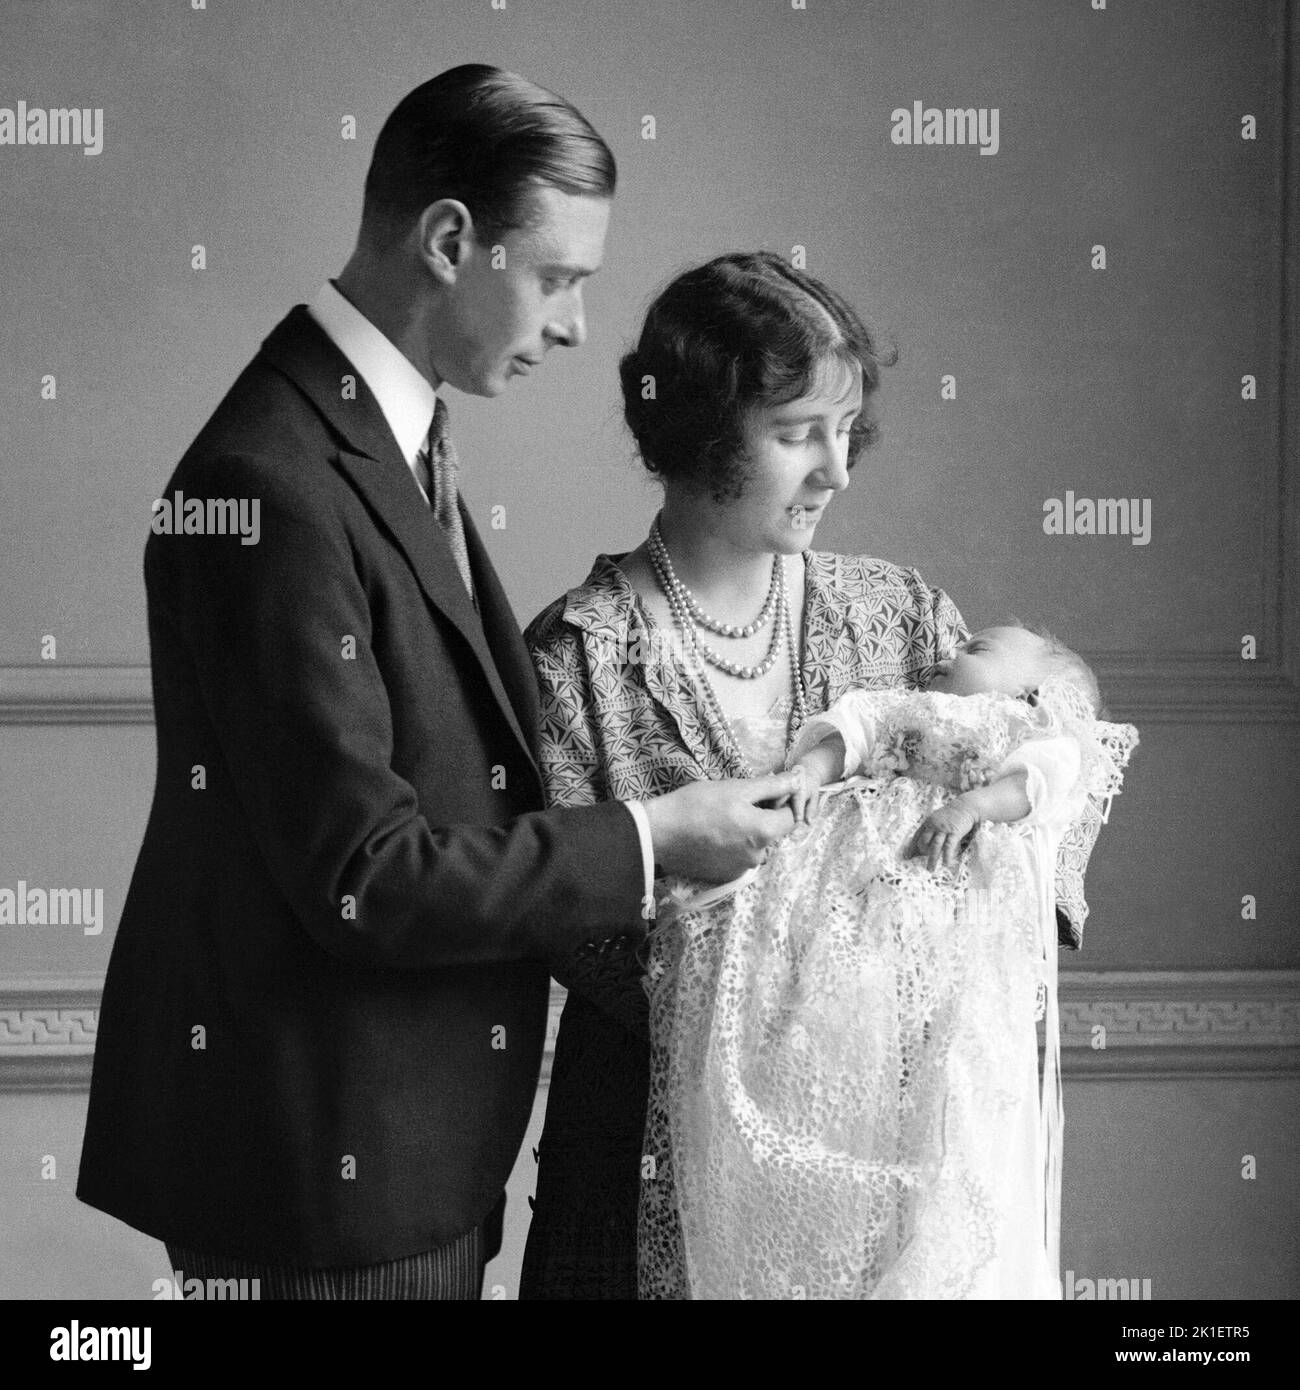 File foto datata 01/05/1926 della Regina Madre (allora Duchessa di York) con suo marito, re Giorgio VI (allora Duca di York), e la loro figlia principessa Elisabetta (ora Regina Elisabetta II) al suo battesimo. Data di emissione: Domenica 18 settembre 2022.. Il credito fotografico dovrebbe essere: PA Wire Foto Stock